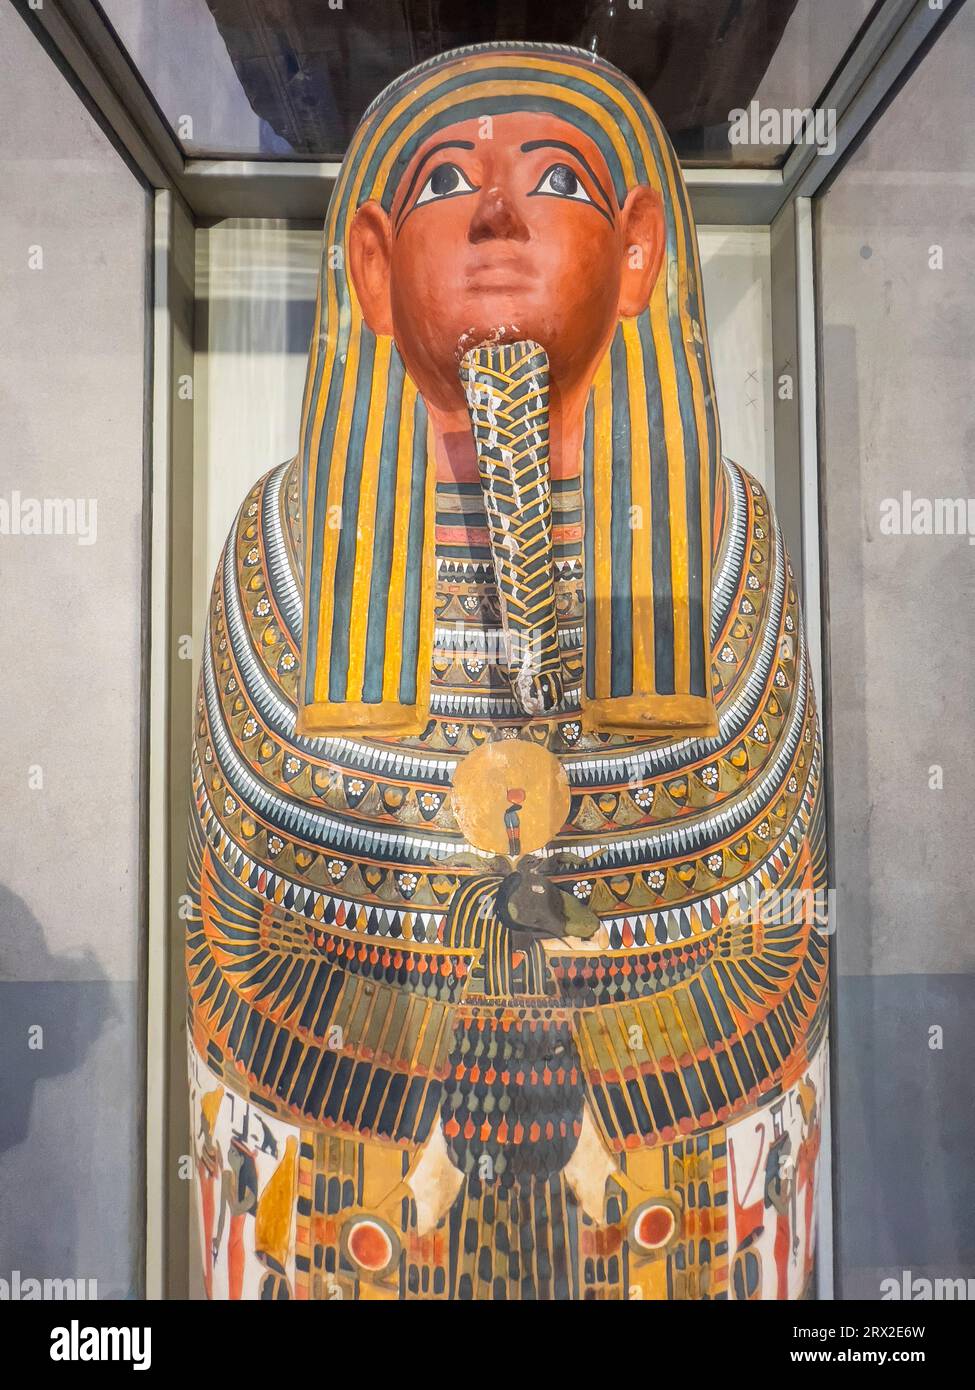 Vue des restes d'un ancien sarcophage égyptien exposé au Musée égyptien, le Caire, Egypte, Afrique du Nord, Afrique Banque D'Images